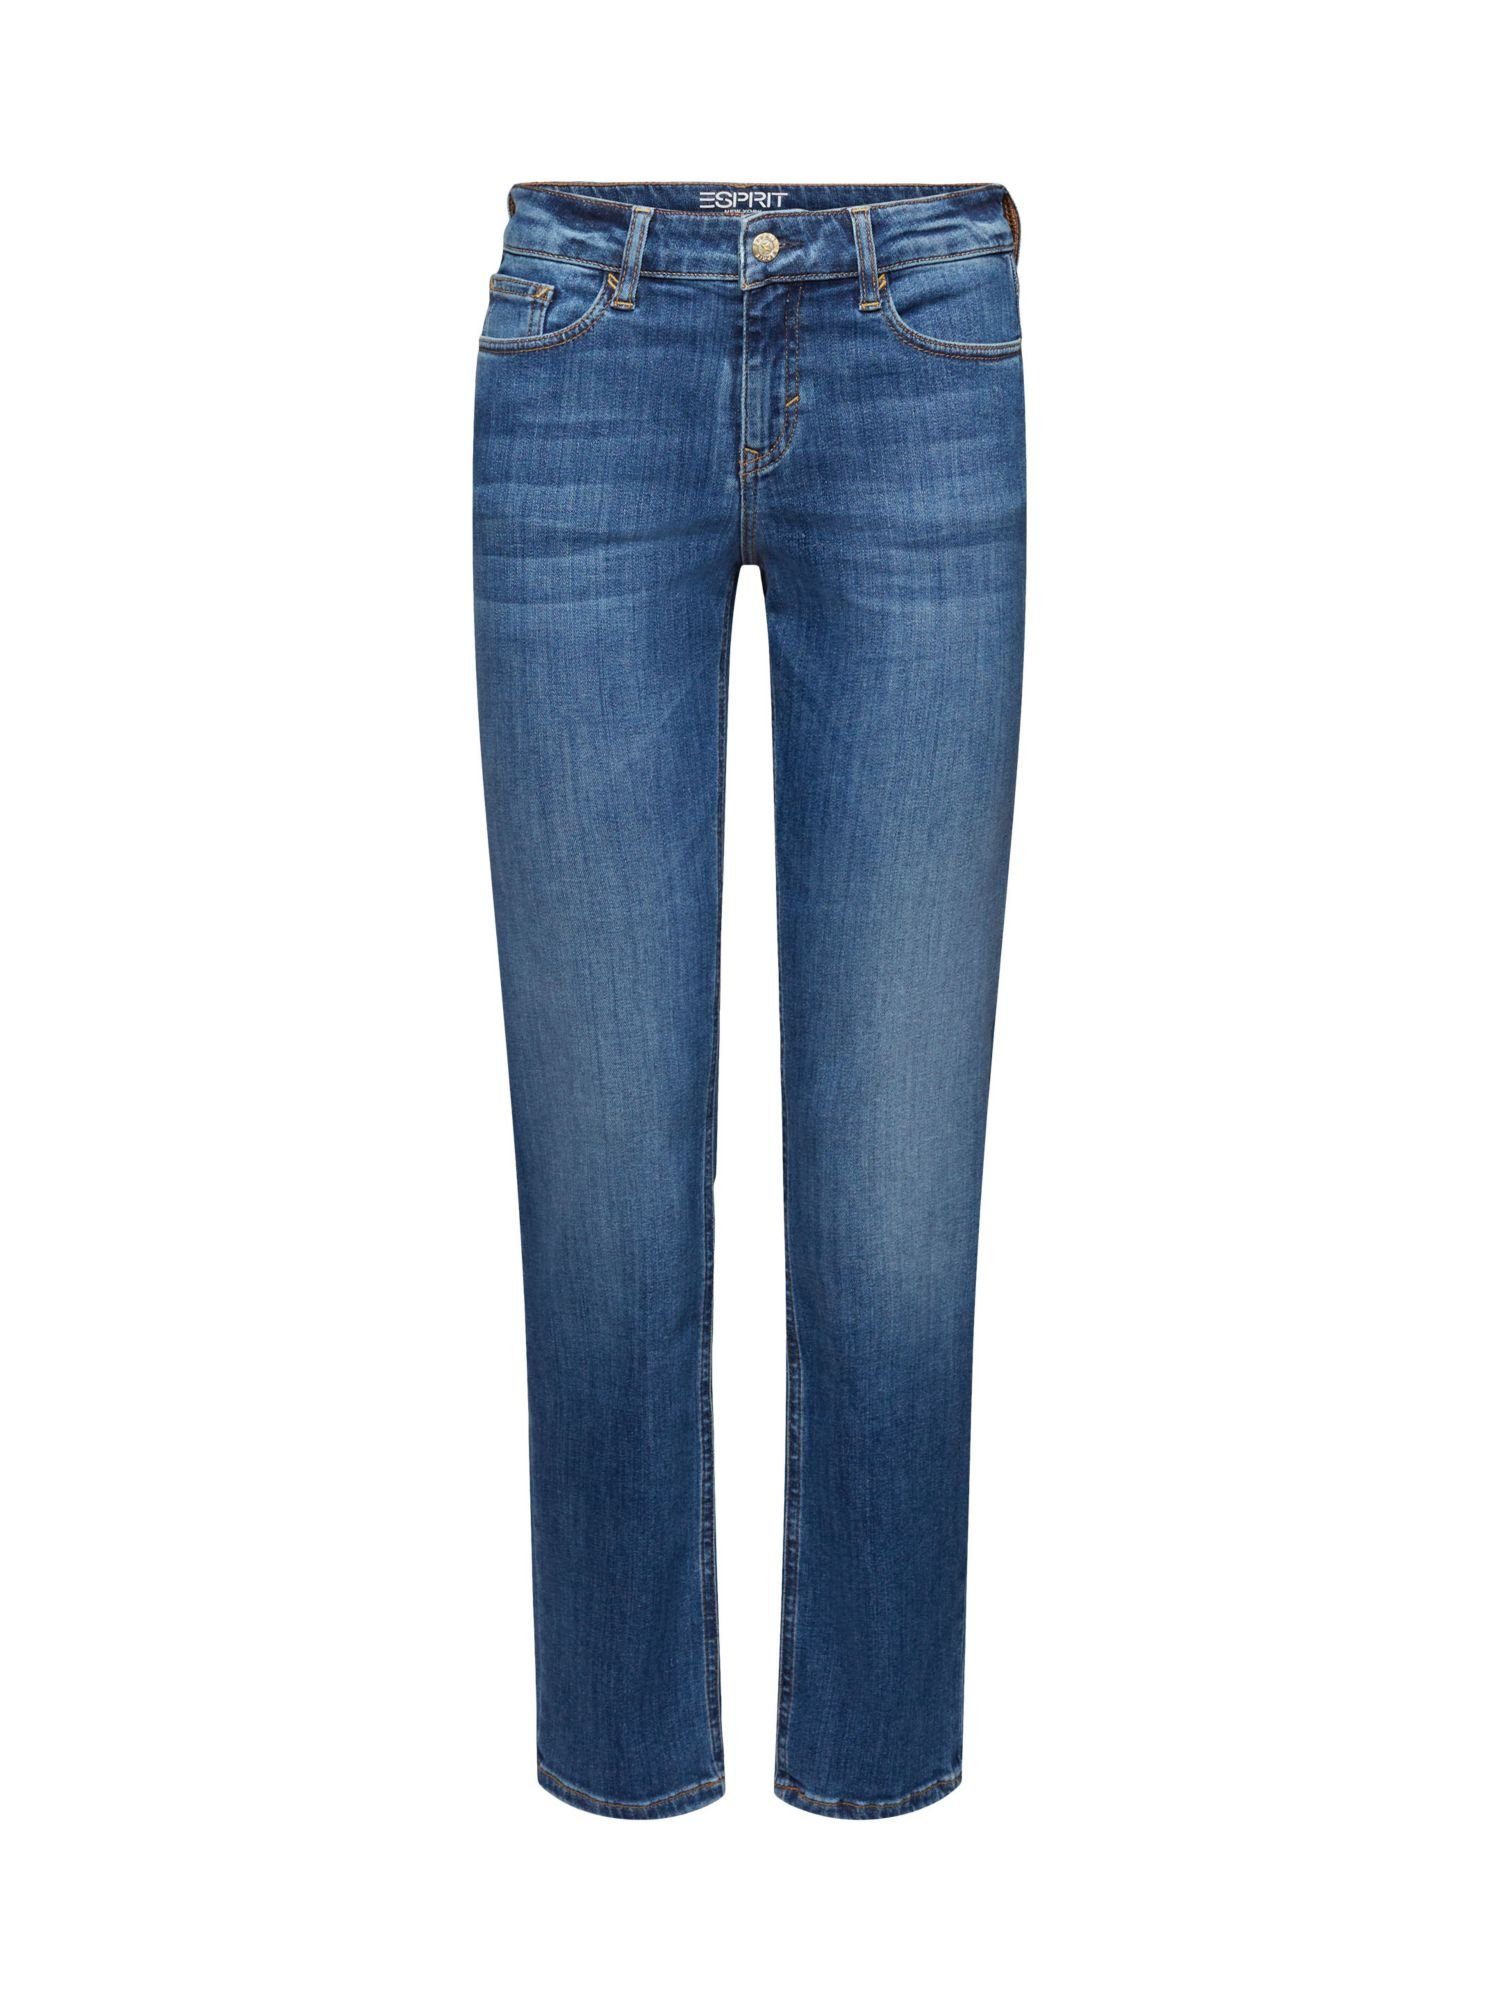 Esprit Straight-Jeans Gerade geschnittene Jeans mit mittelhohem Bund | Straight-Fit Jeans